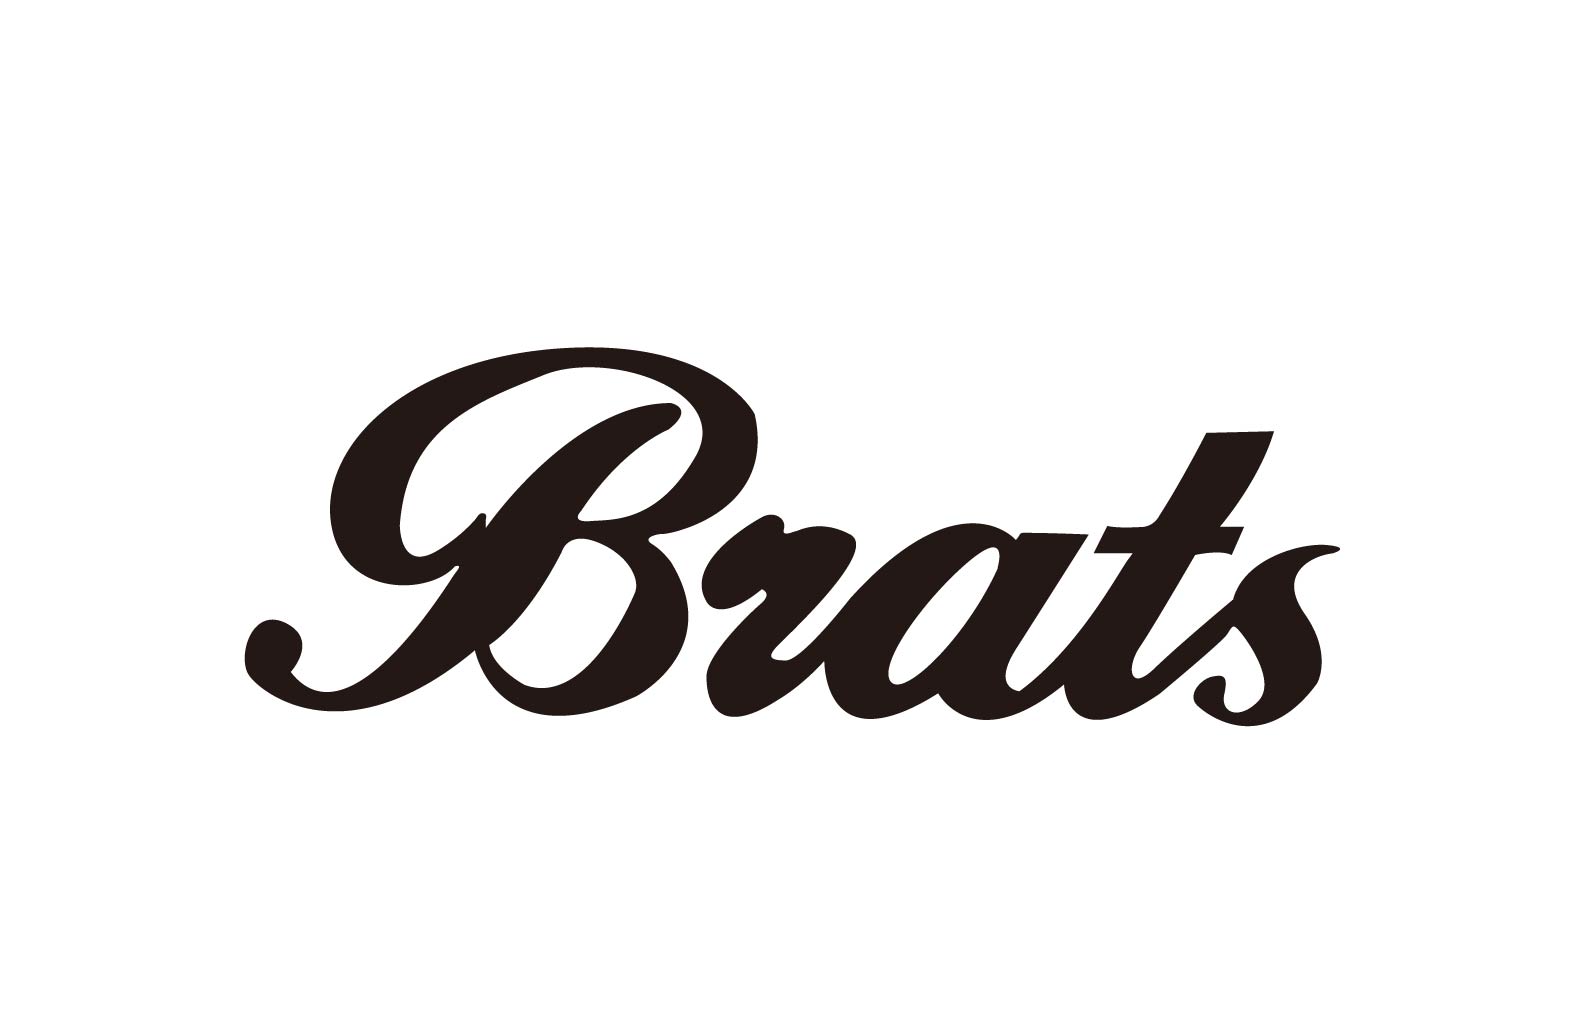 Brats